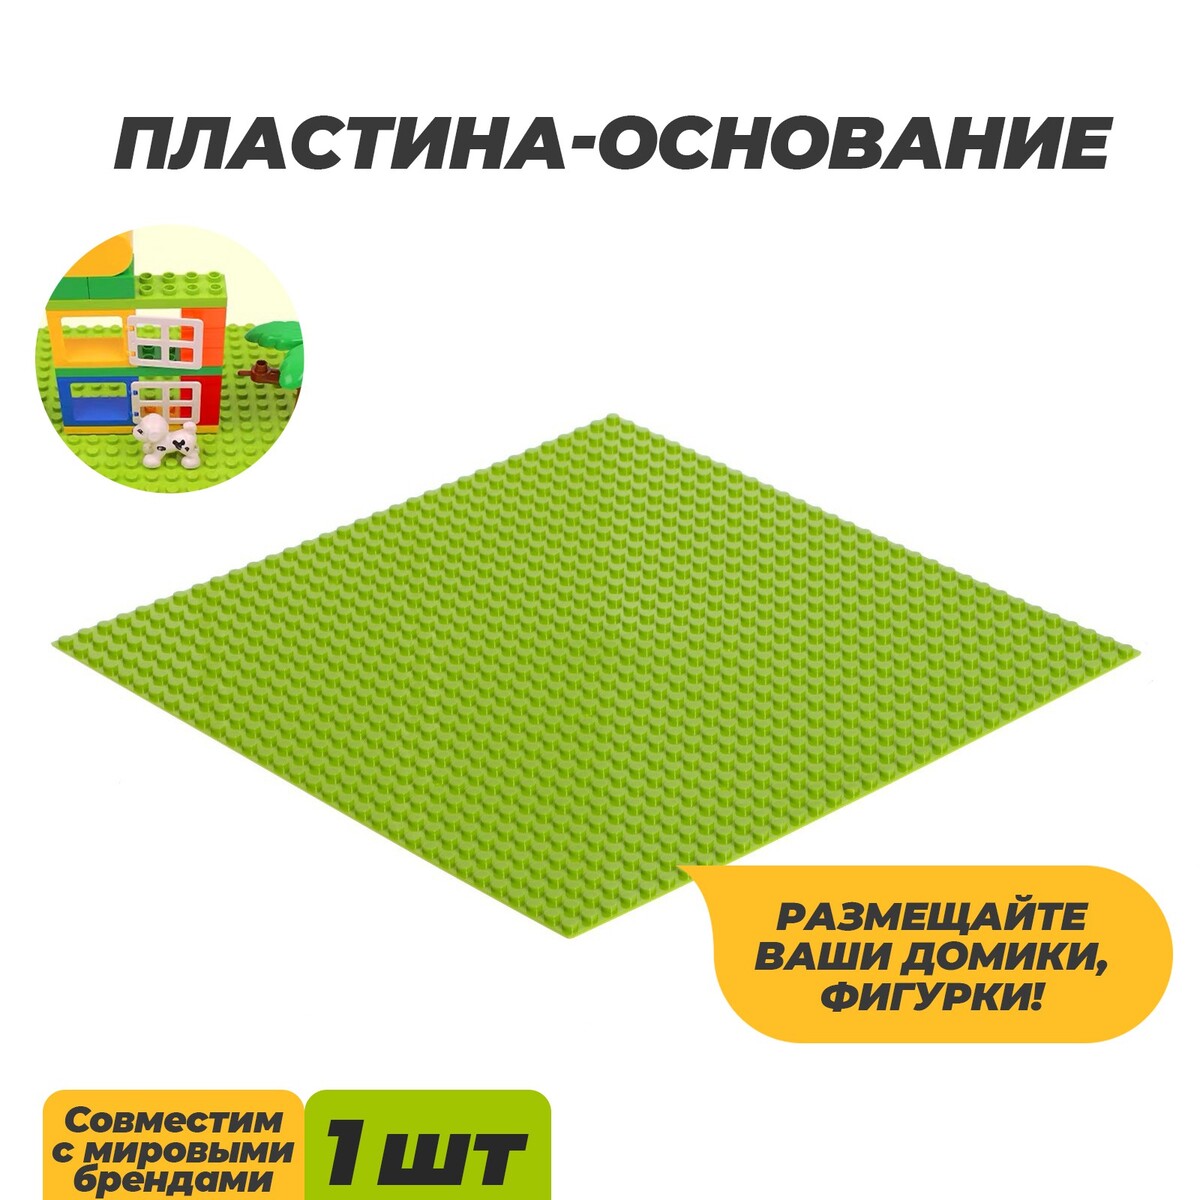 Пластина-основание для конструктора, 25,5 × 25,5 см, цвет салатовый пластина основание для конструктора 40 × 40 см салатовый